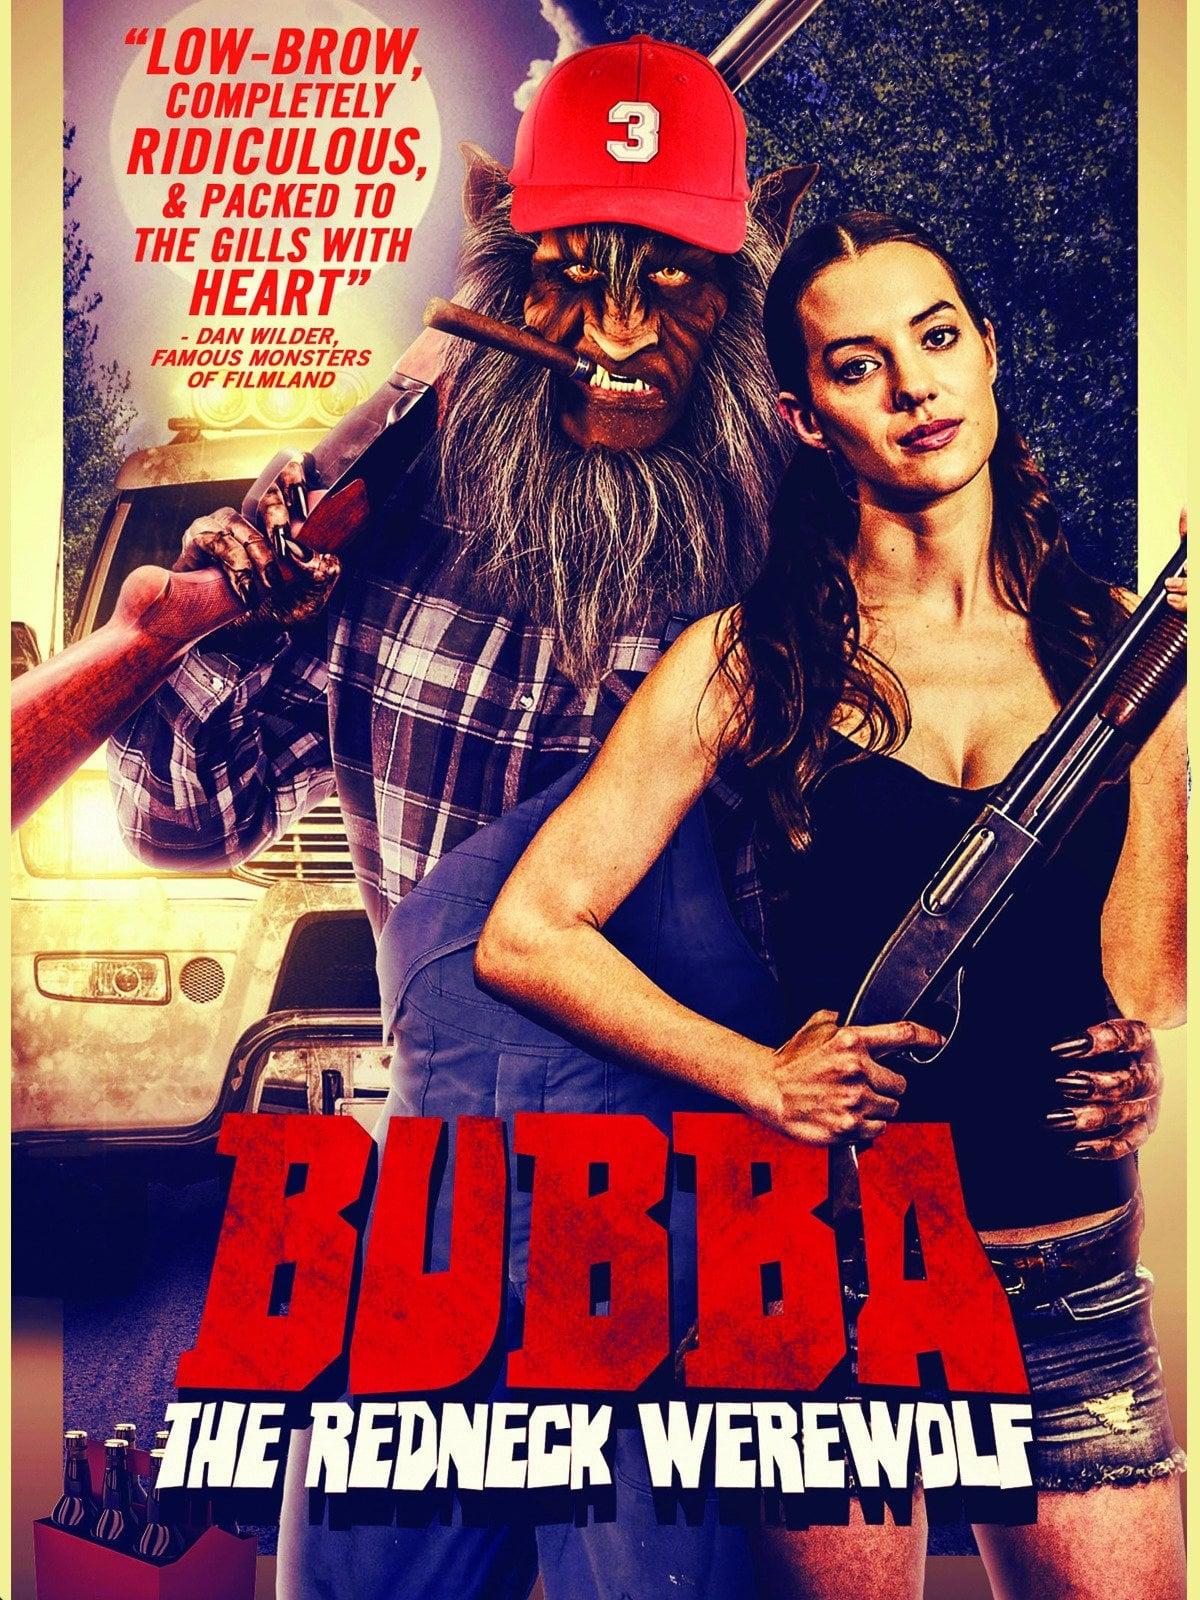 Bubba the Redneck Werewolf poster